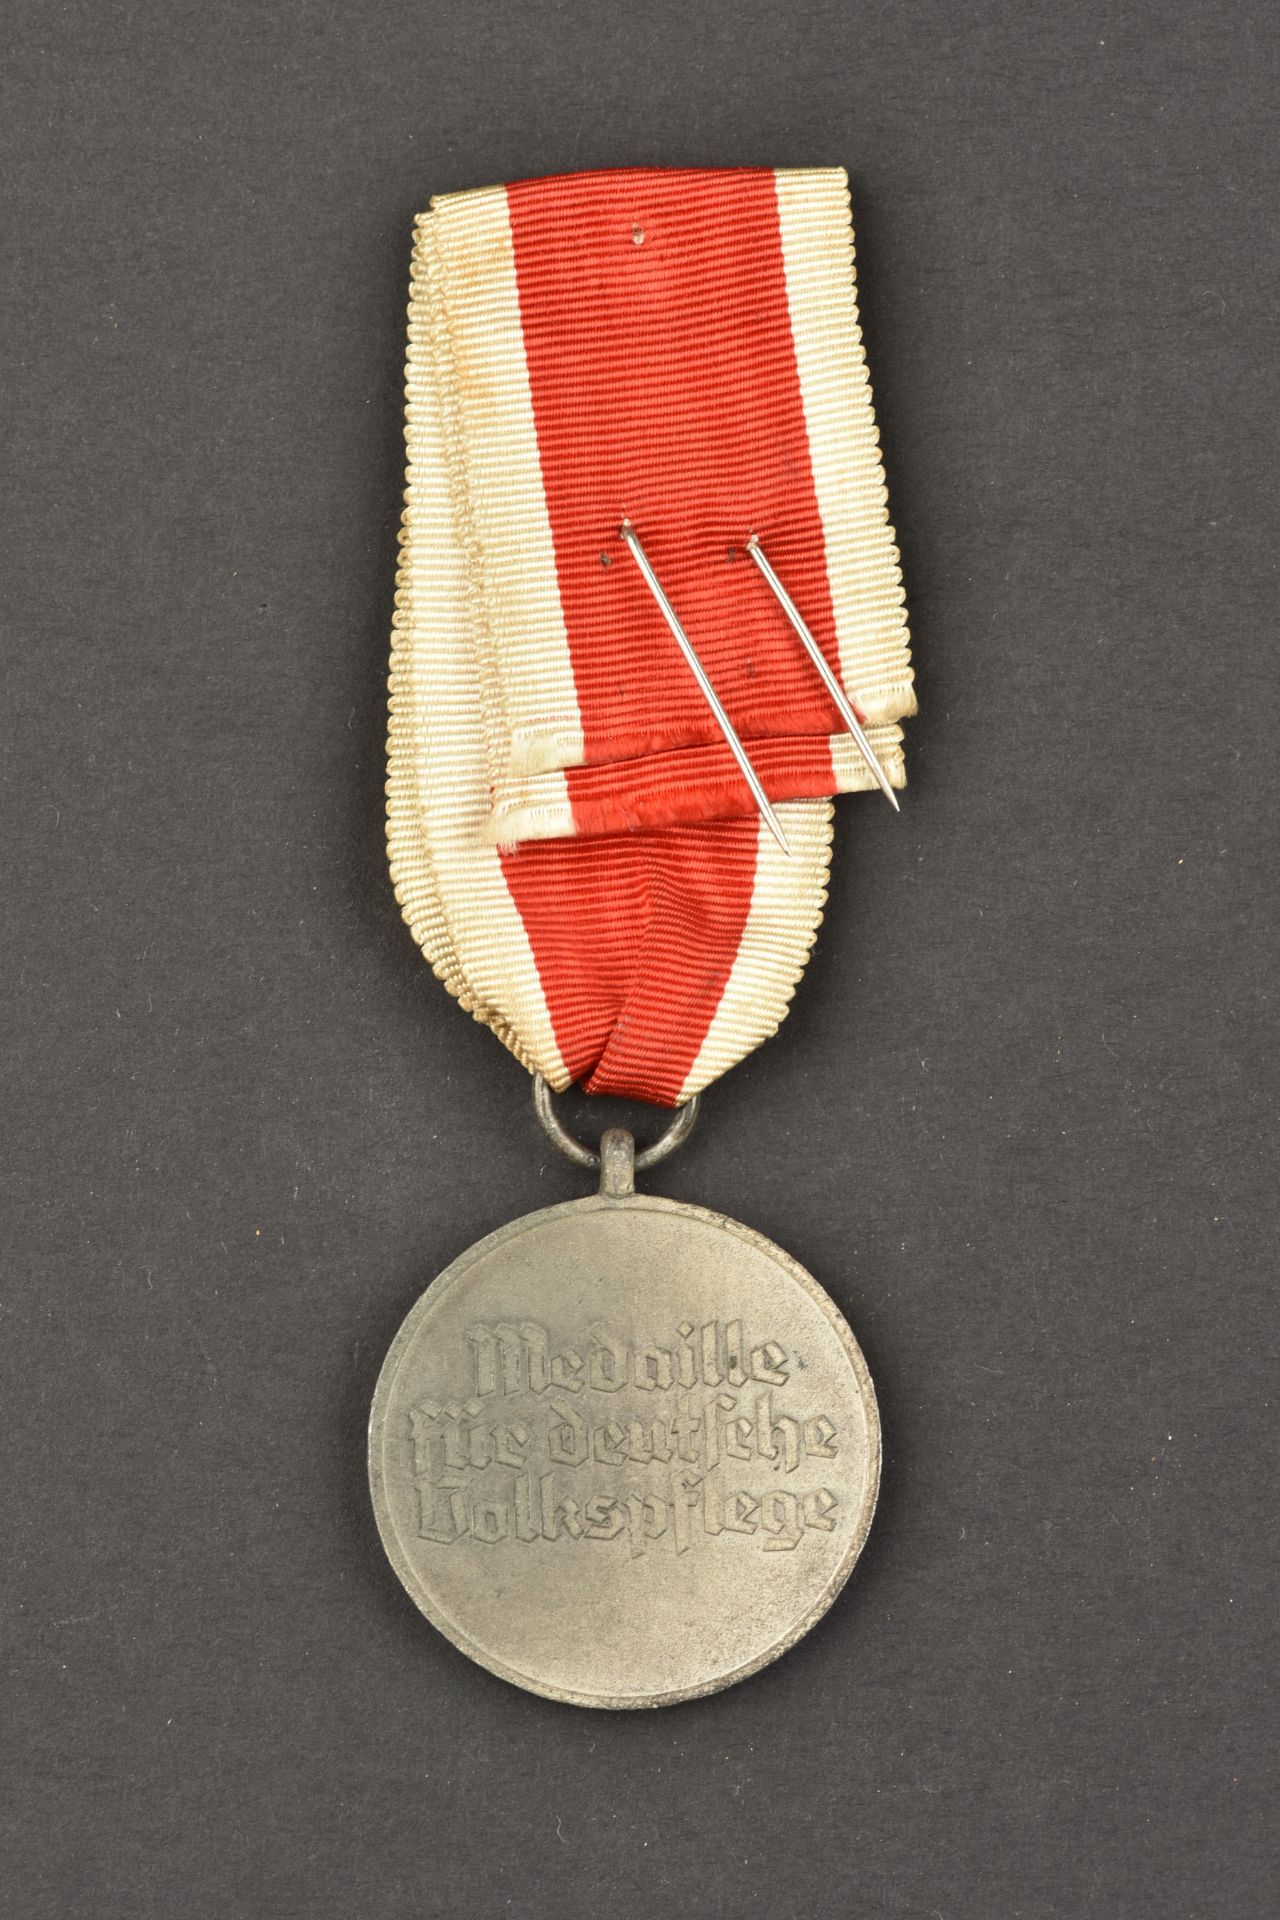 MŽdaille DRK. DRK medal. - Bild 2 aus 2